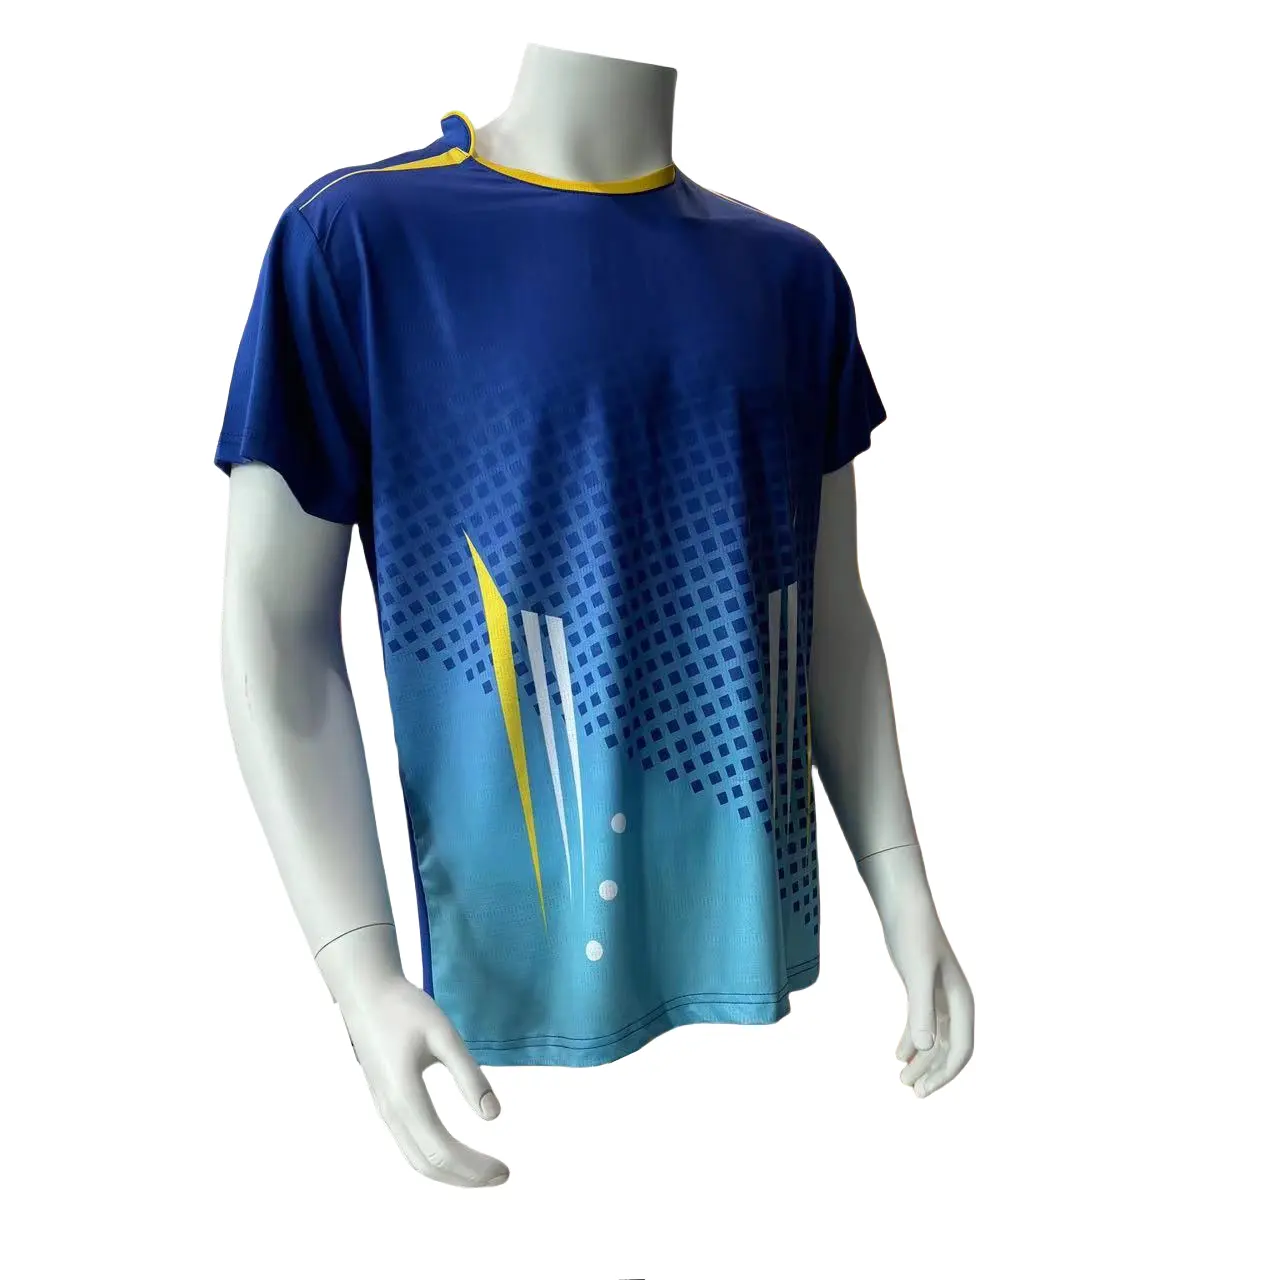 強力な工場からの保証メンズジムTシャツ-アクティブライフスタイルのためのパフォーマンススポーツアパレル